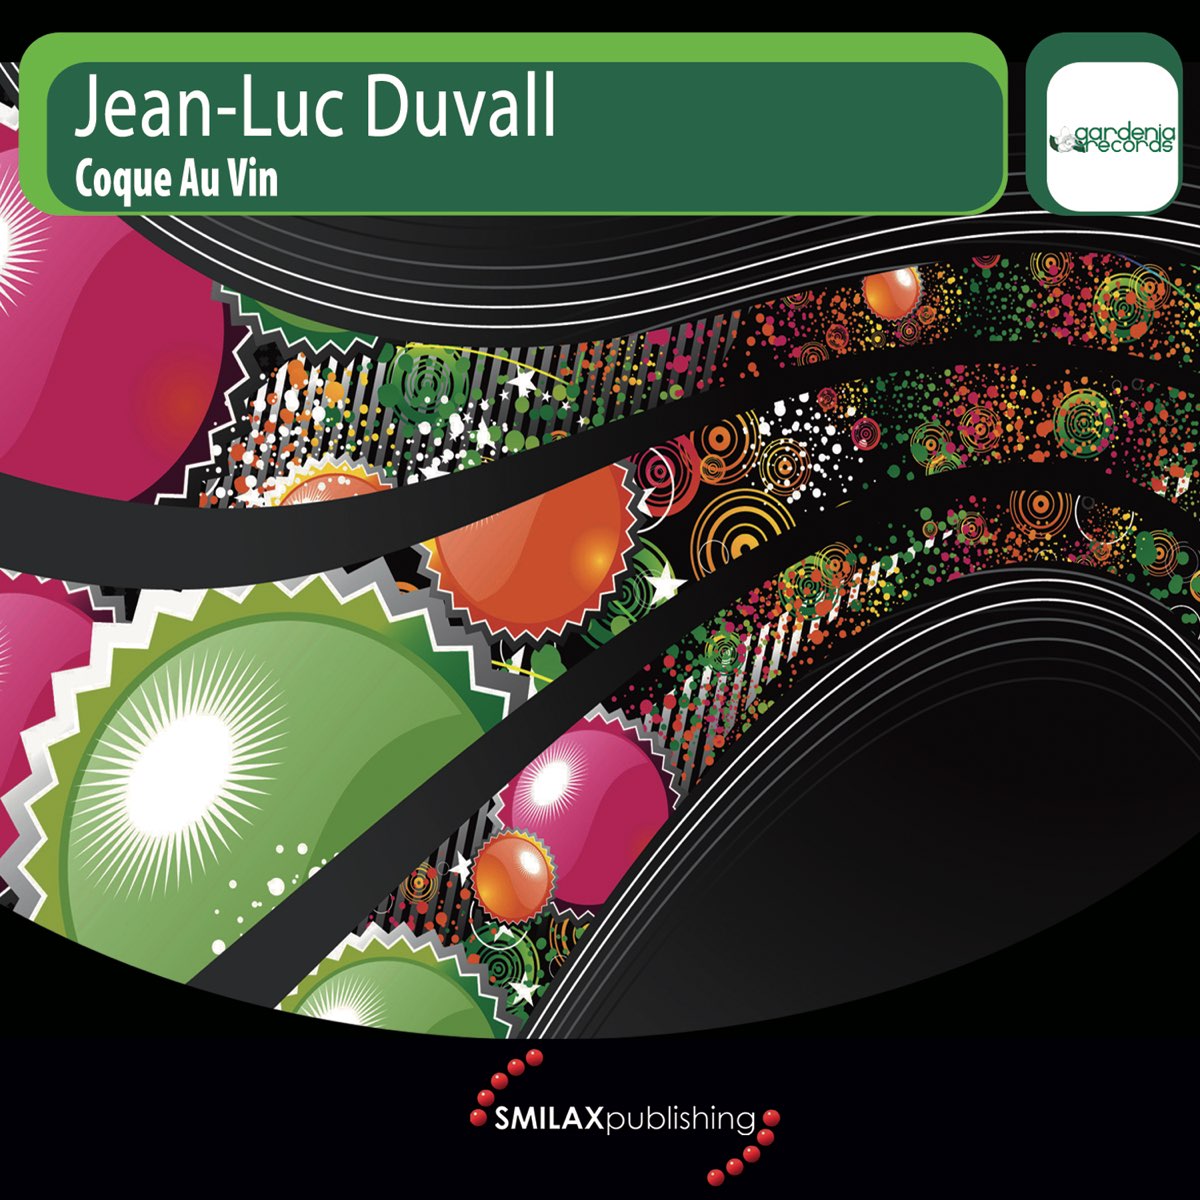 Coque Au Vin - Album by Jean-Luc Duvall - Apple Music